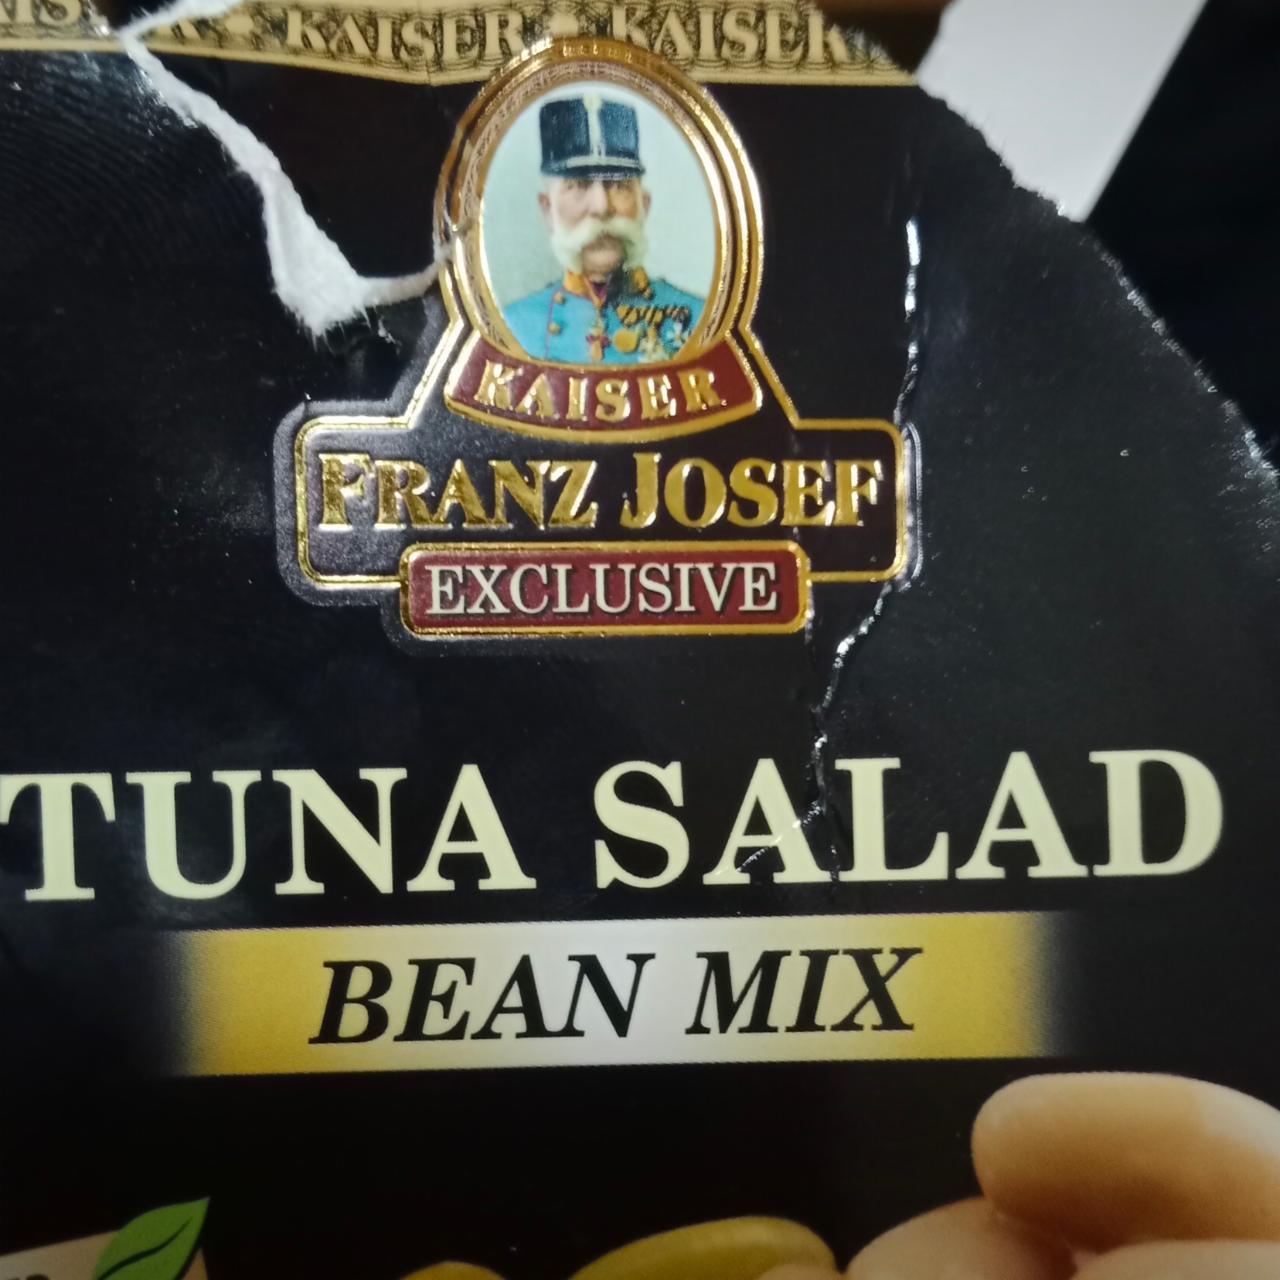 Fotografie - Tuna salad Bean mix Kaiser Franz Josef